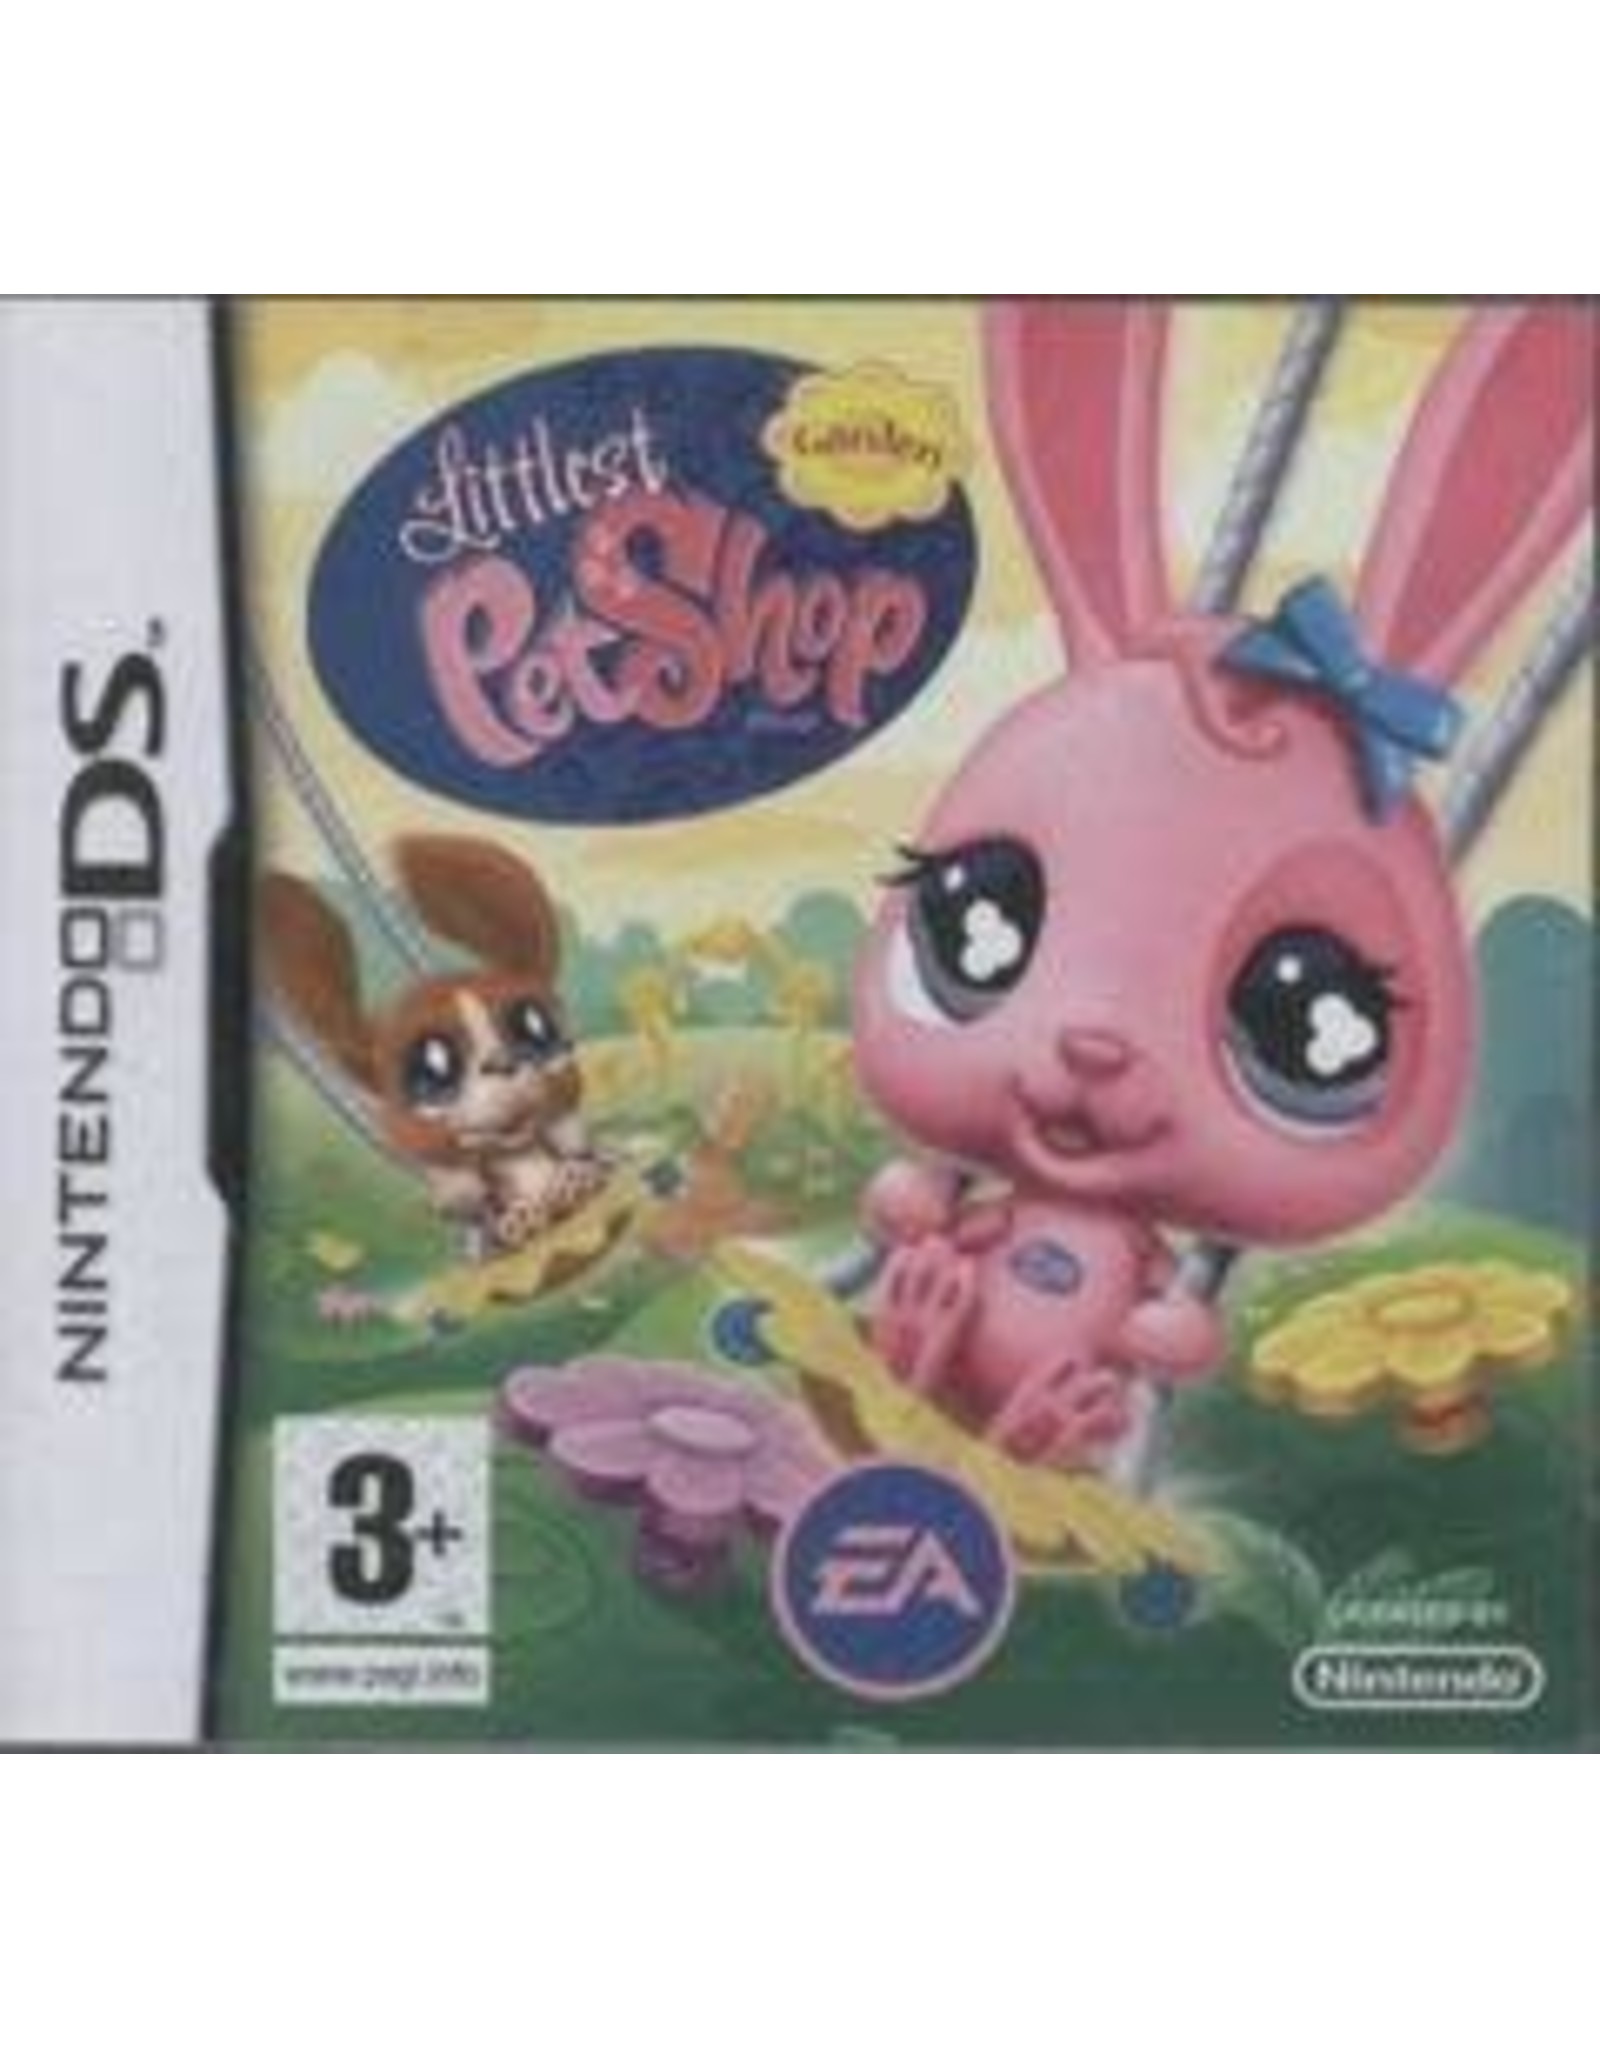 Nintendo DS Littlest Pet Shop Garden (Cart Only, PAL Import)